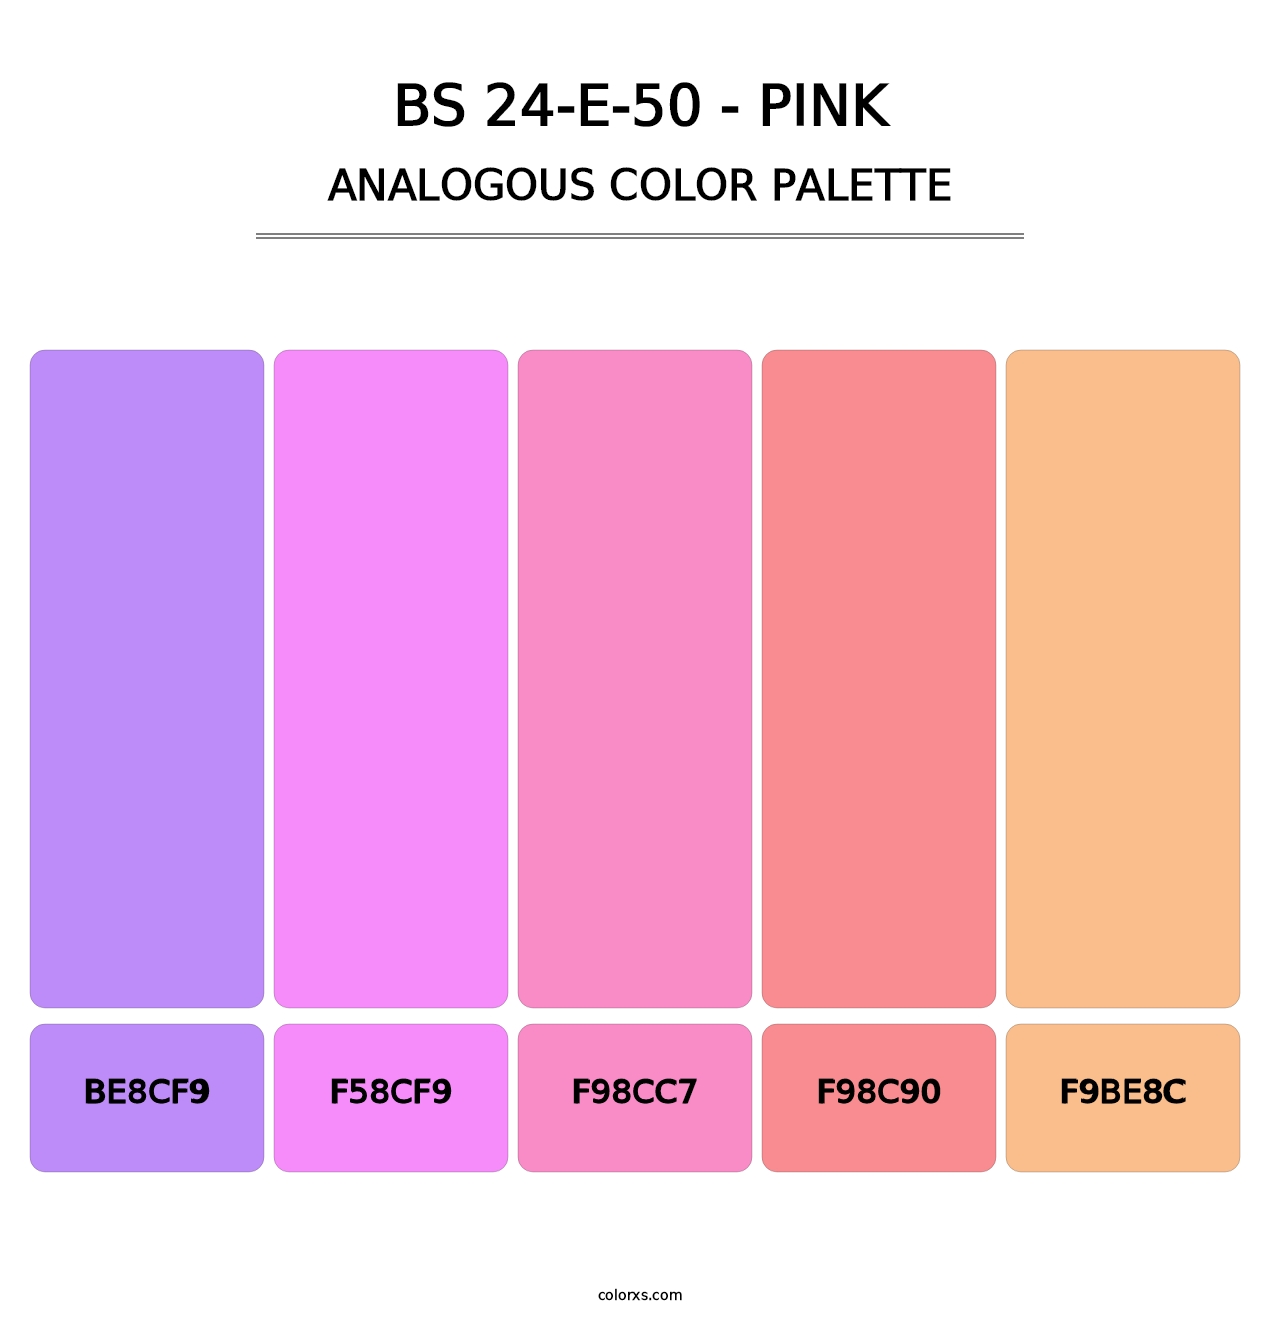 BS 24-E-50 - Pink - Analogous Color Palette